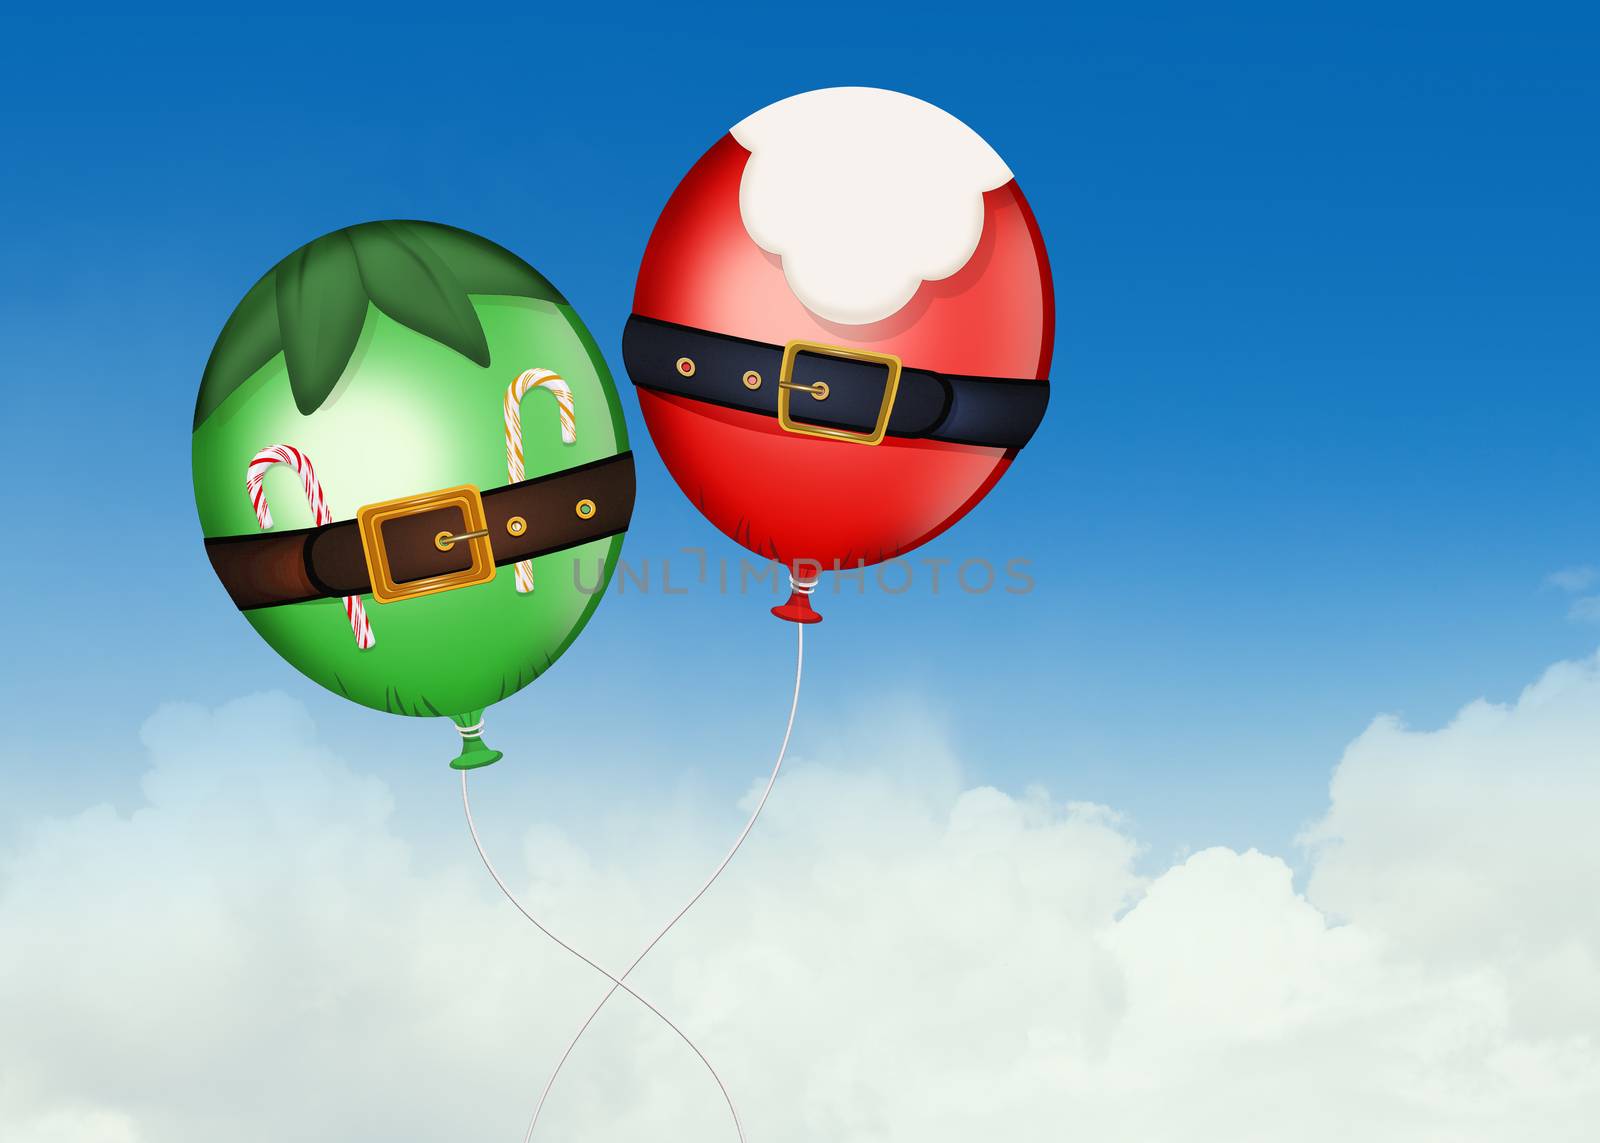 Santa Claus and elf balloon by adrenalina